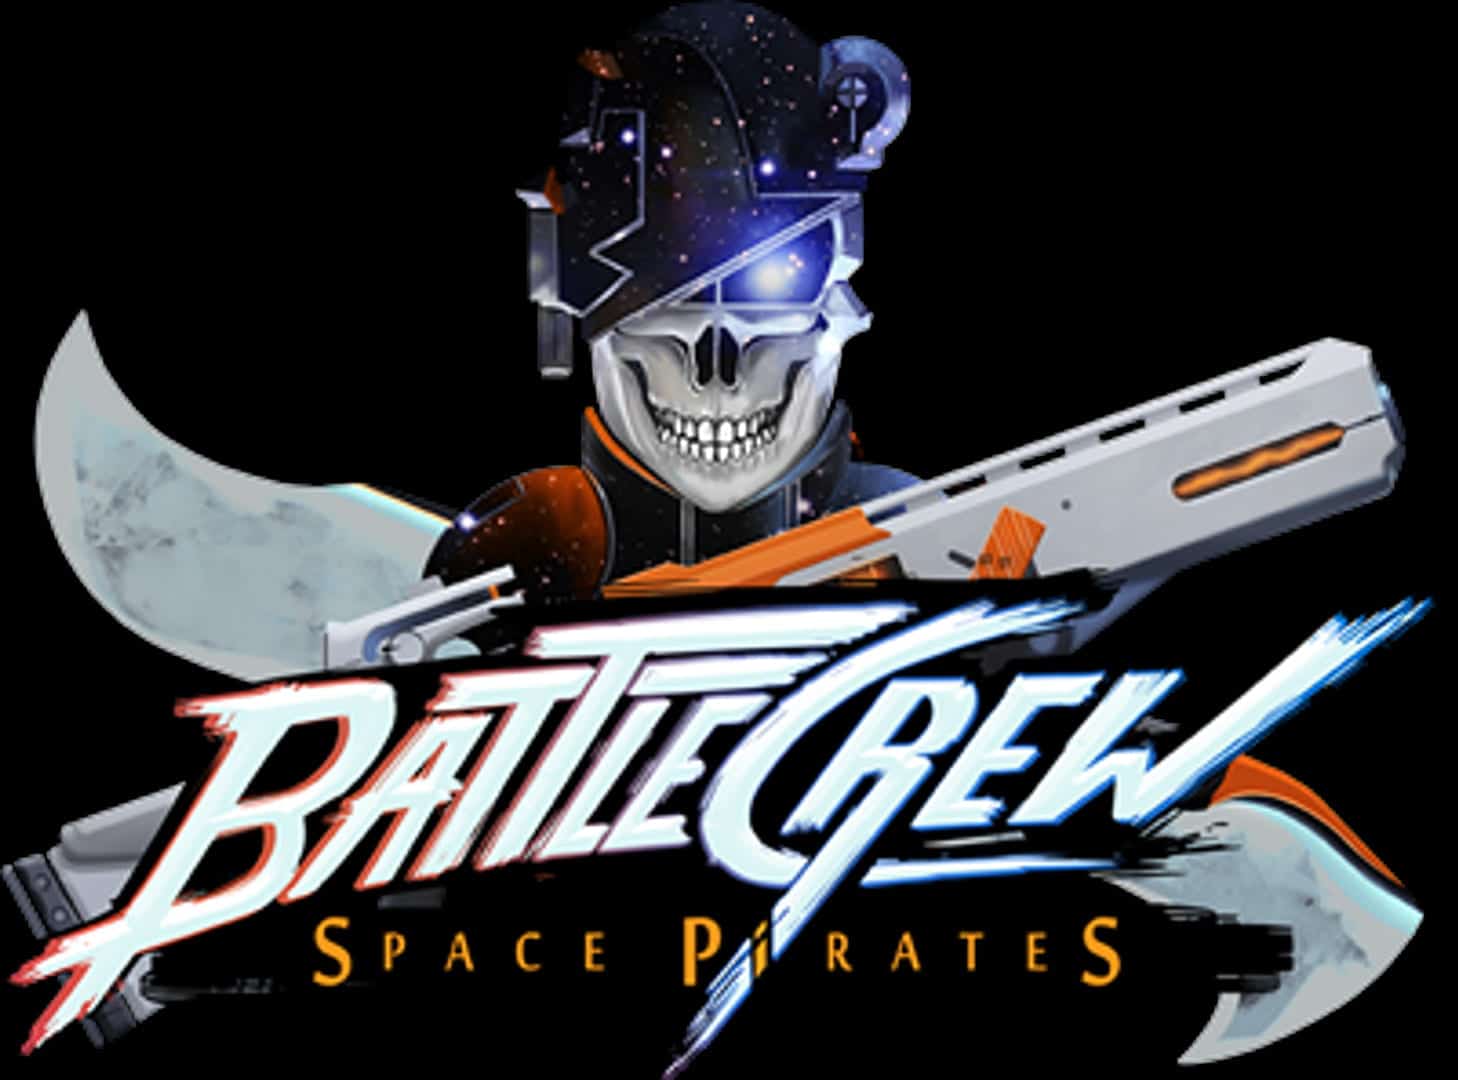 BattleCrew: Space Pirates